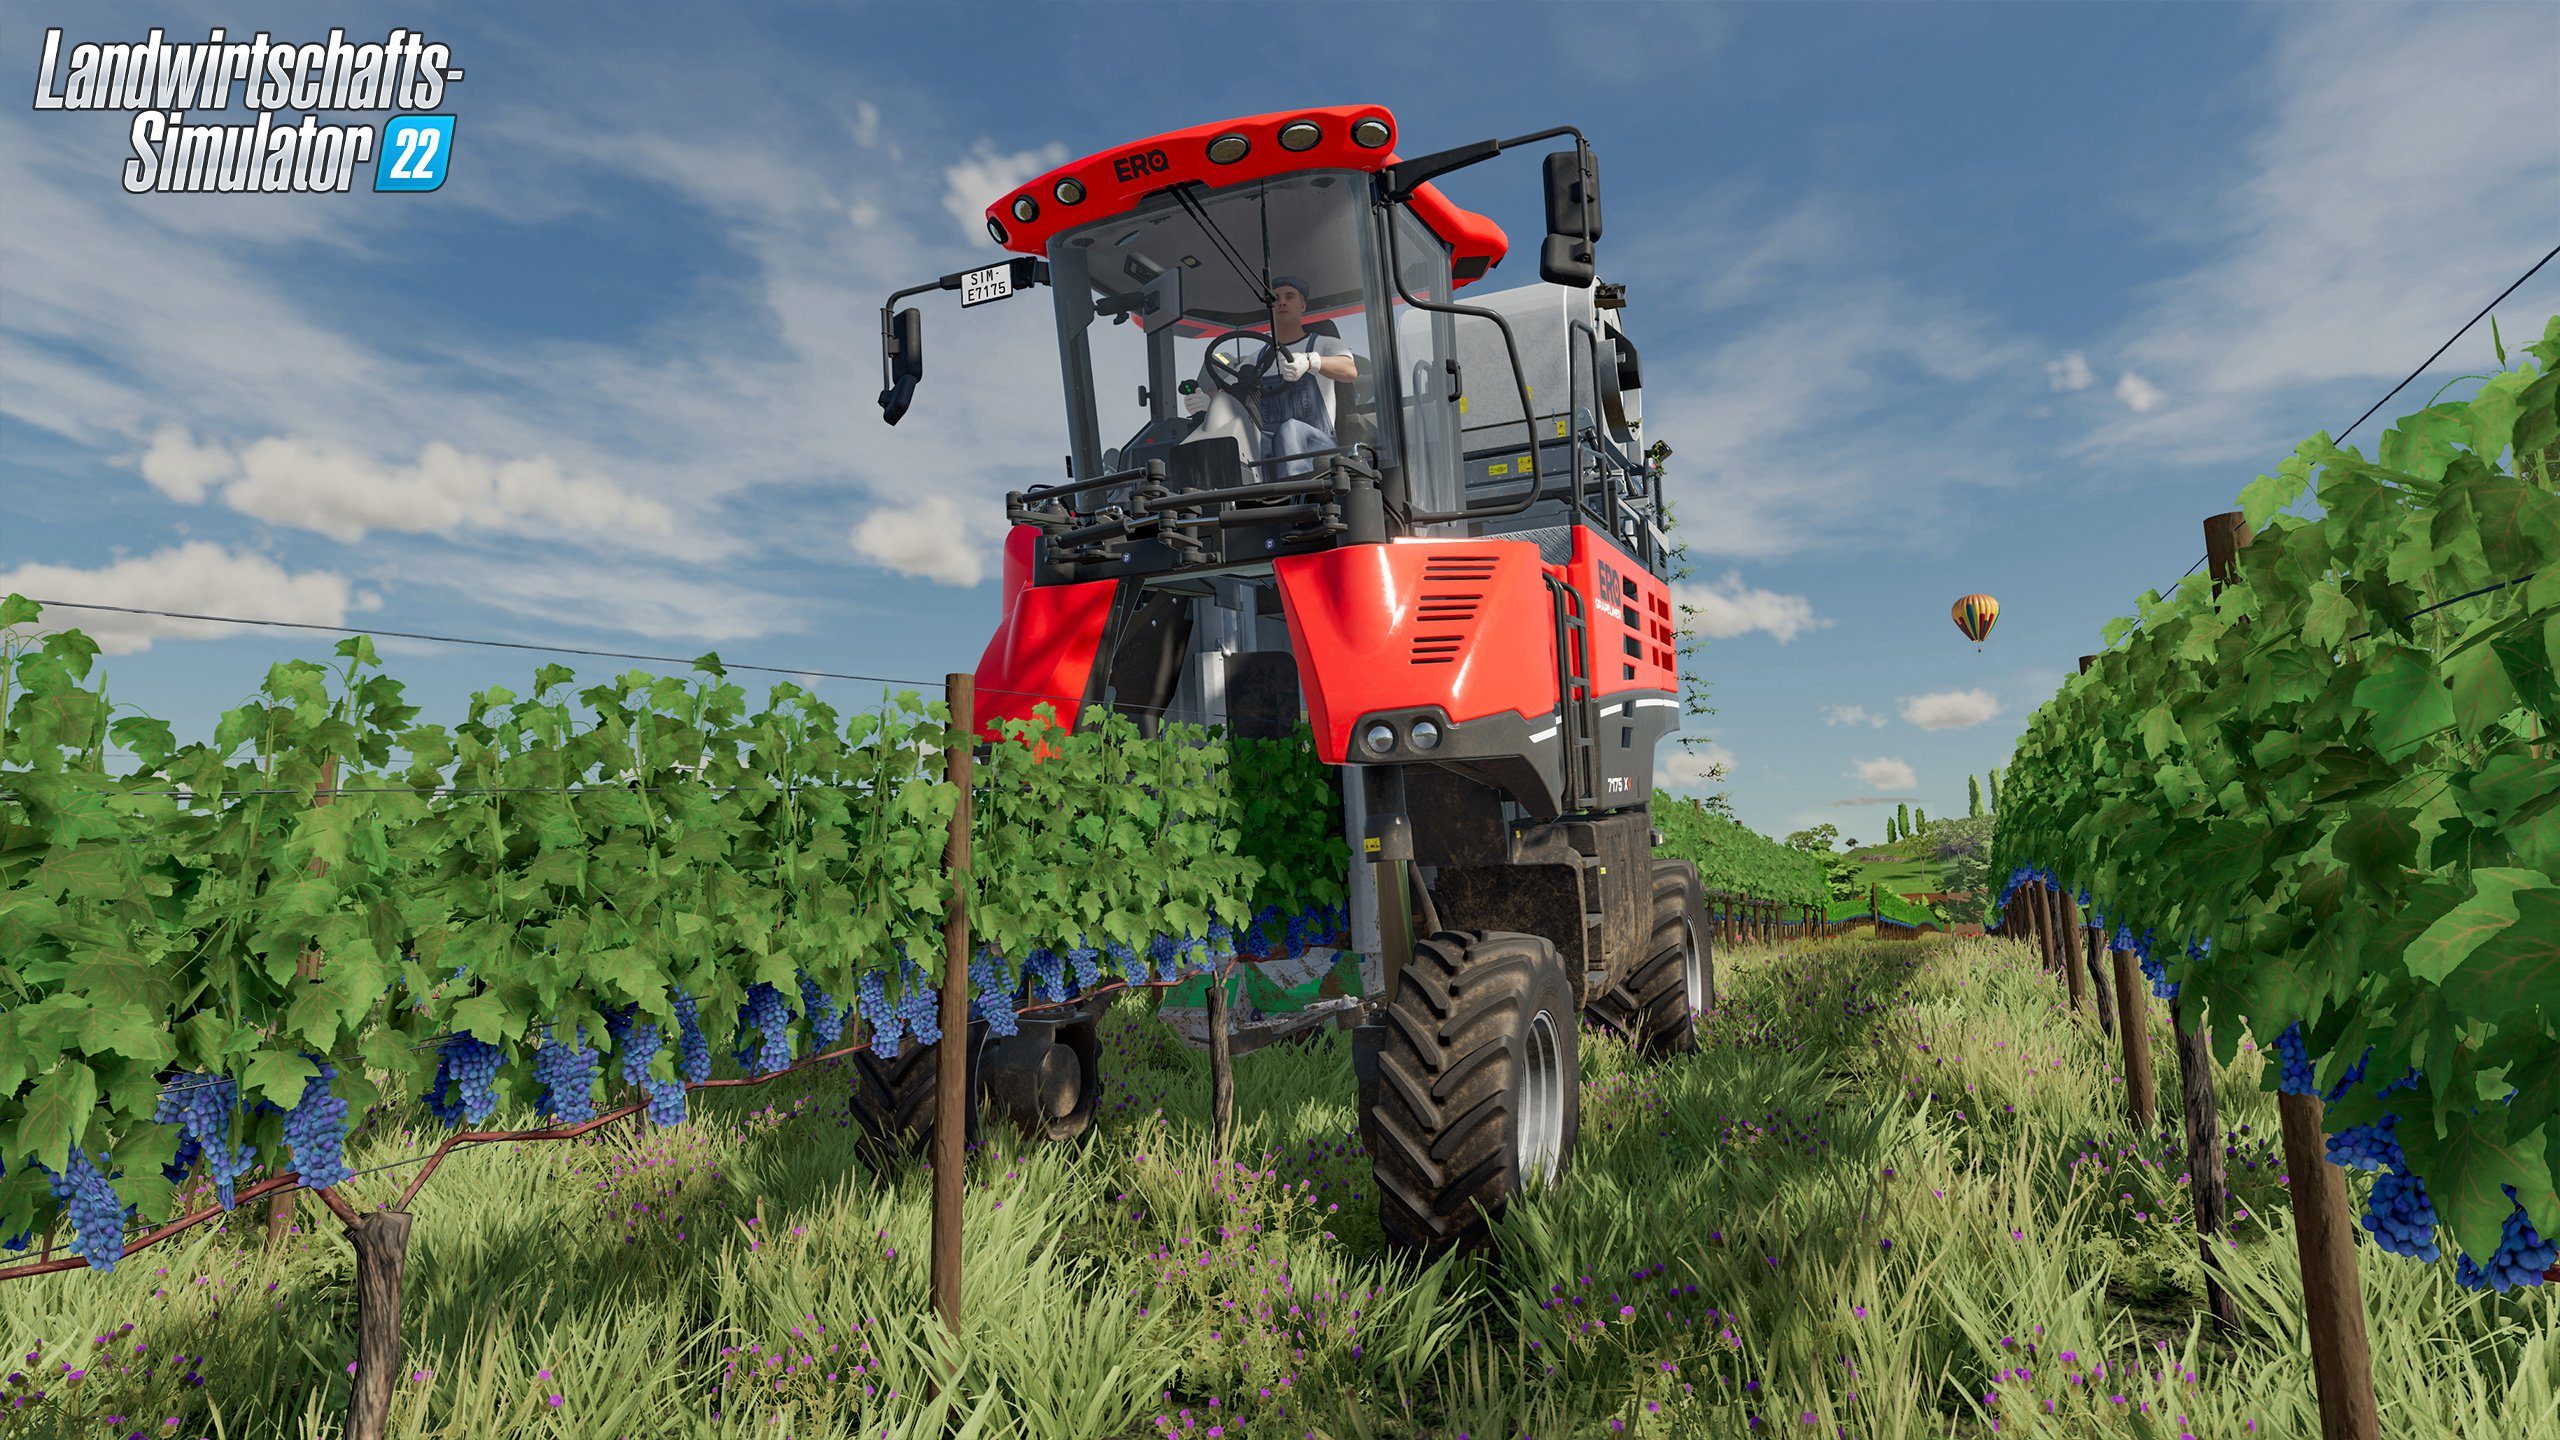 22 Rundumleuchte Landwirtschafts-Simulator PC